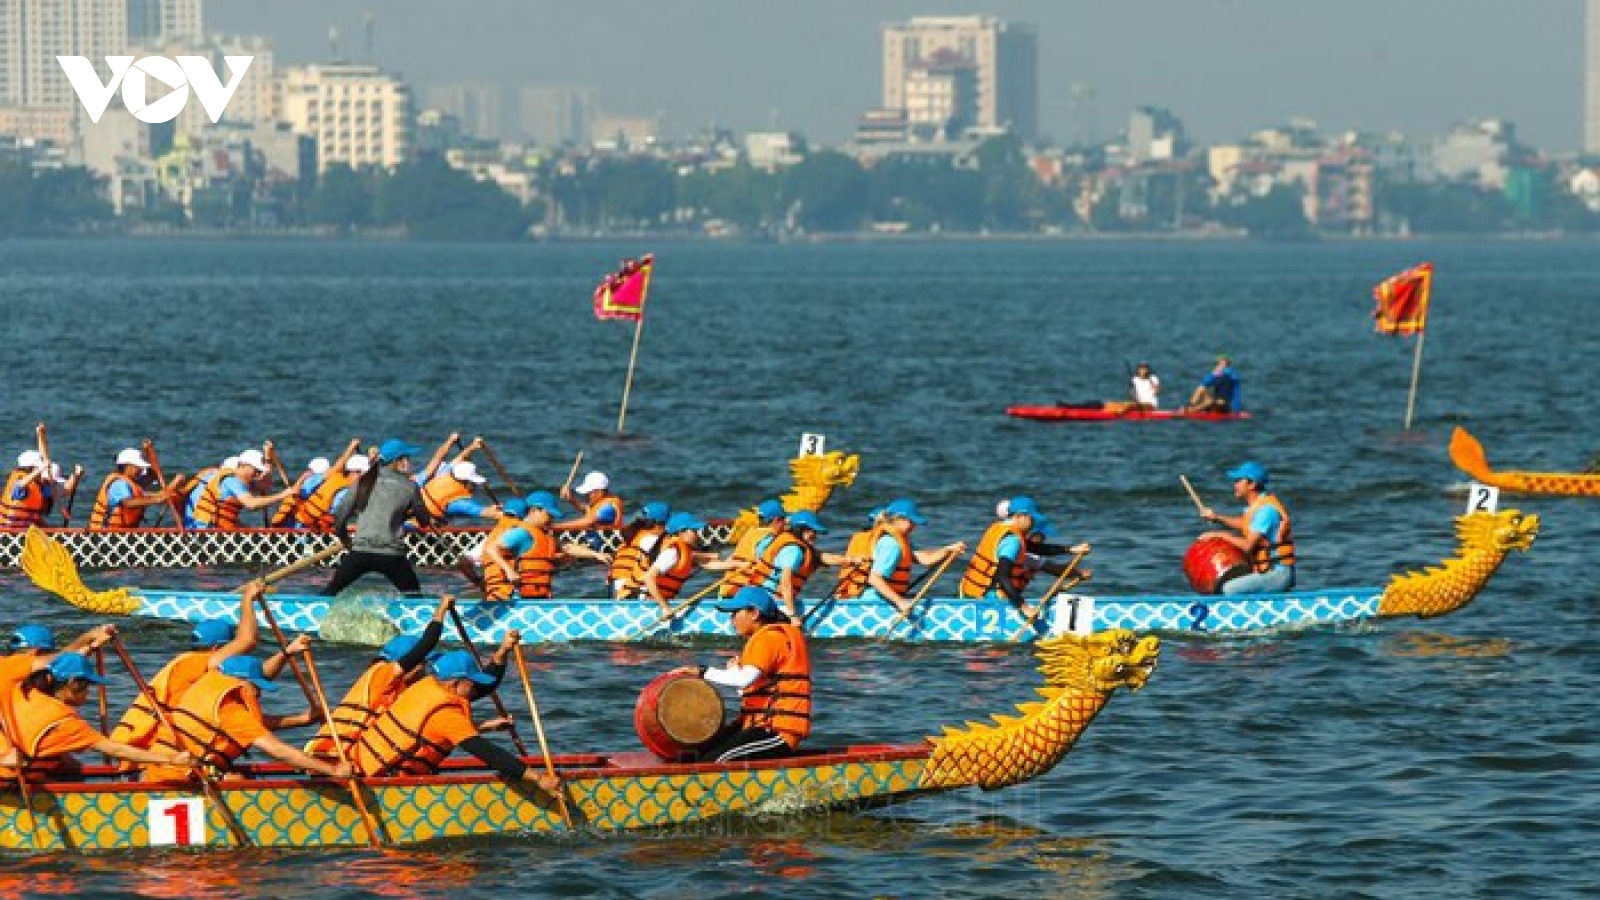 Hơn 500 vận động viên tranh giải Bơi chải thuyền rồng Hà Nội 2020 trên Hồ Tây